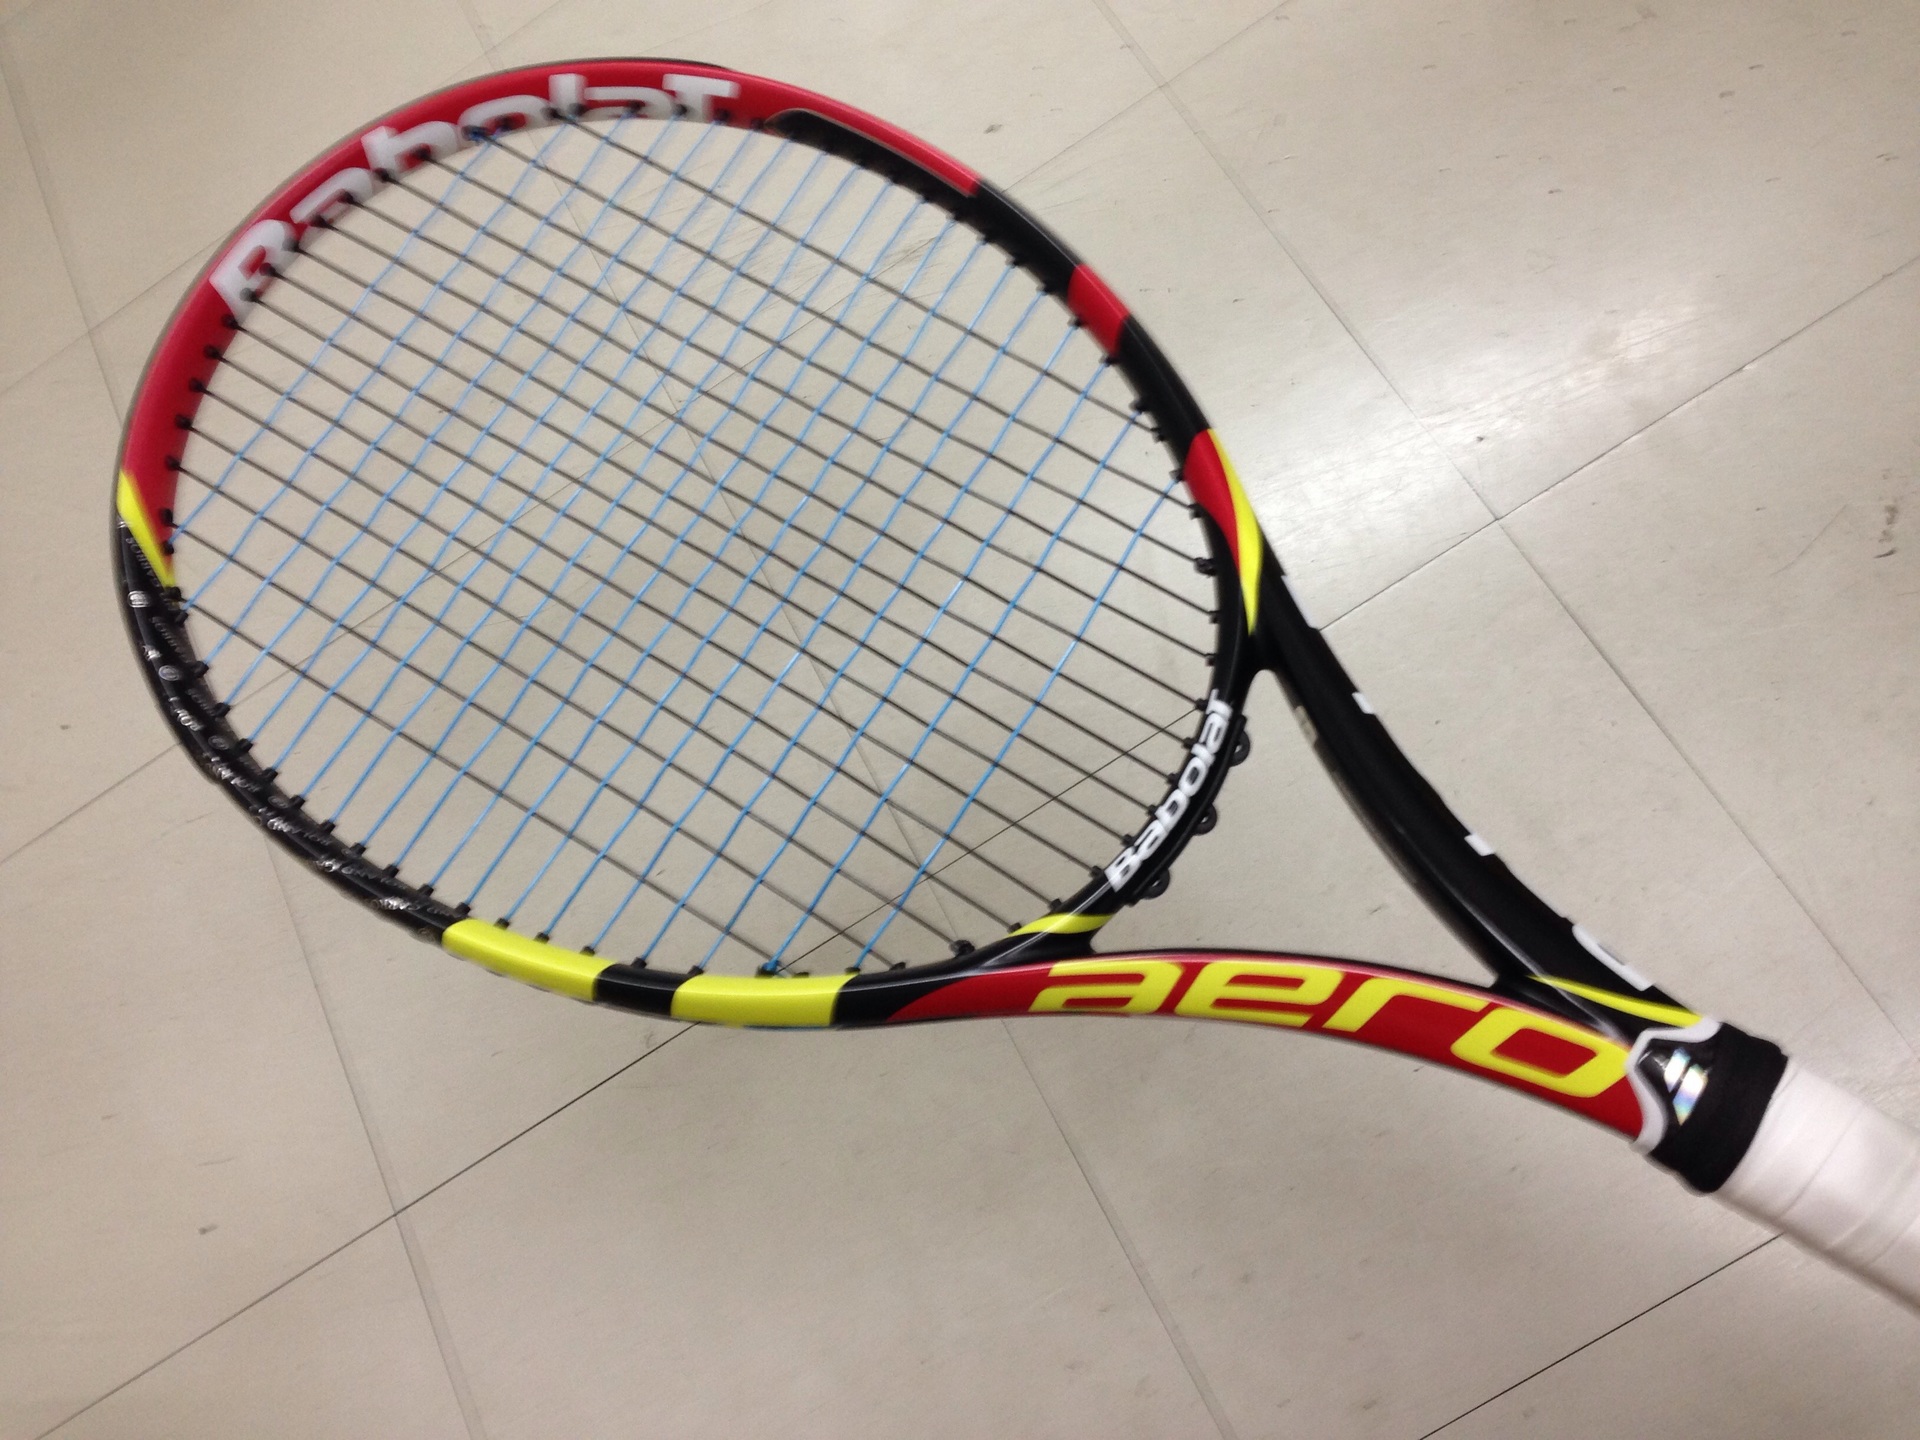 Babolat アエロプロドライブ テニスラケット